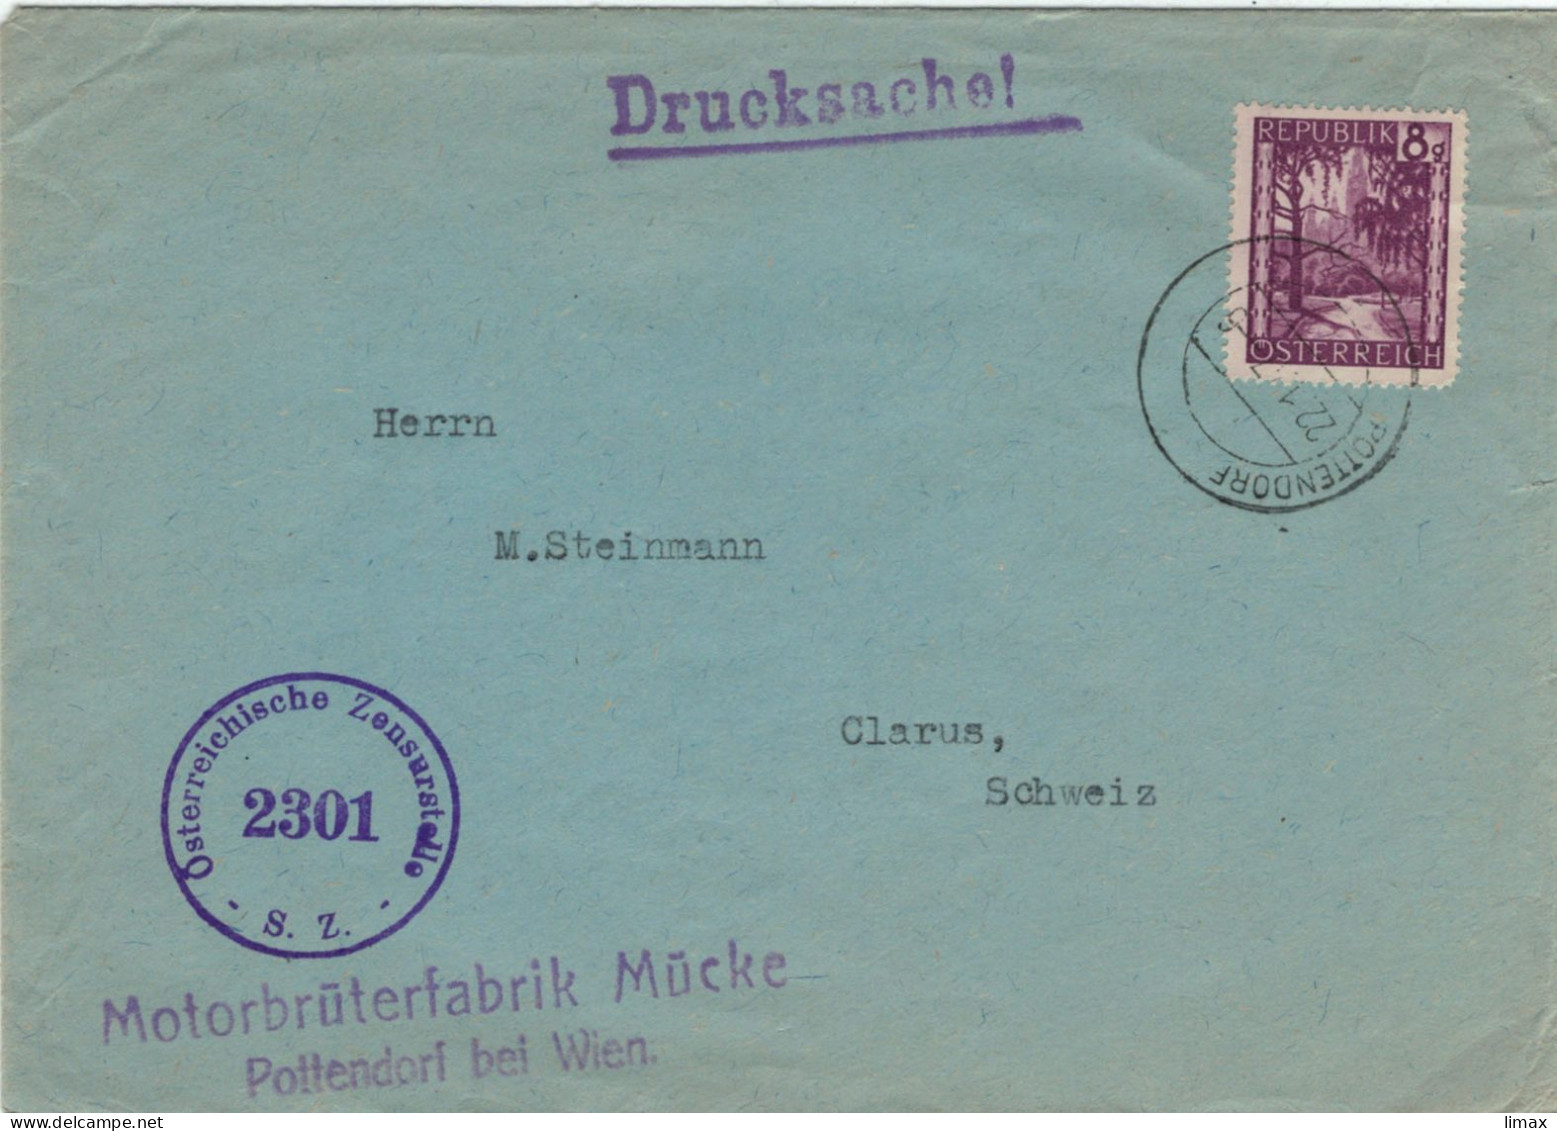 Motorbrüterfabrik Mücke Pottendorf Bei Wien 1947 Zensur 2301 > Glarus - Geflügelzucht Tierschutz Tierleid Skandale - Brieven En Documenten